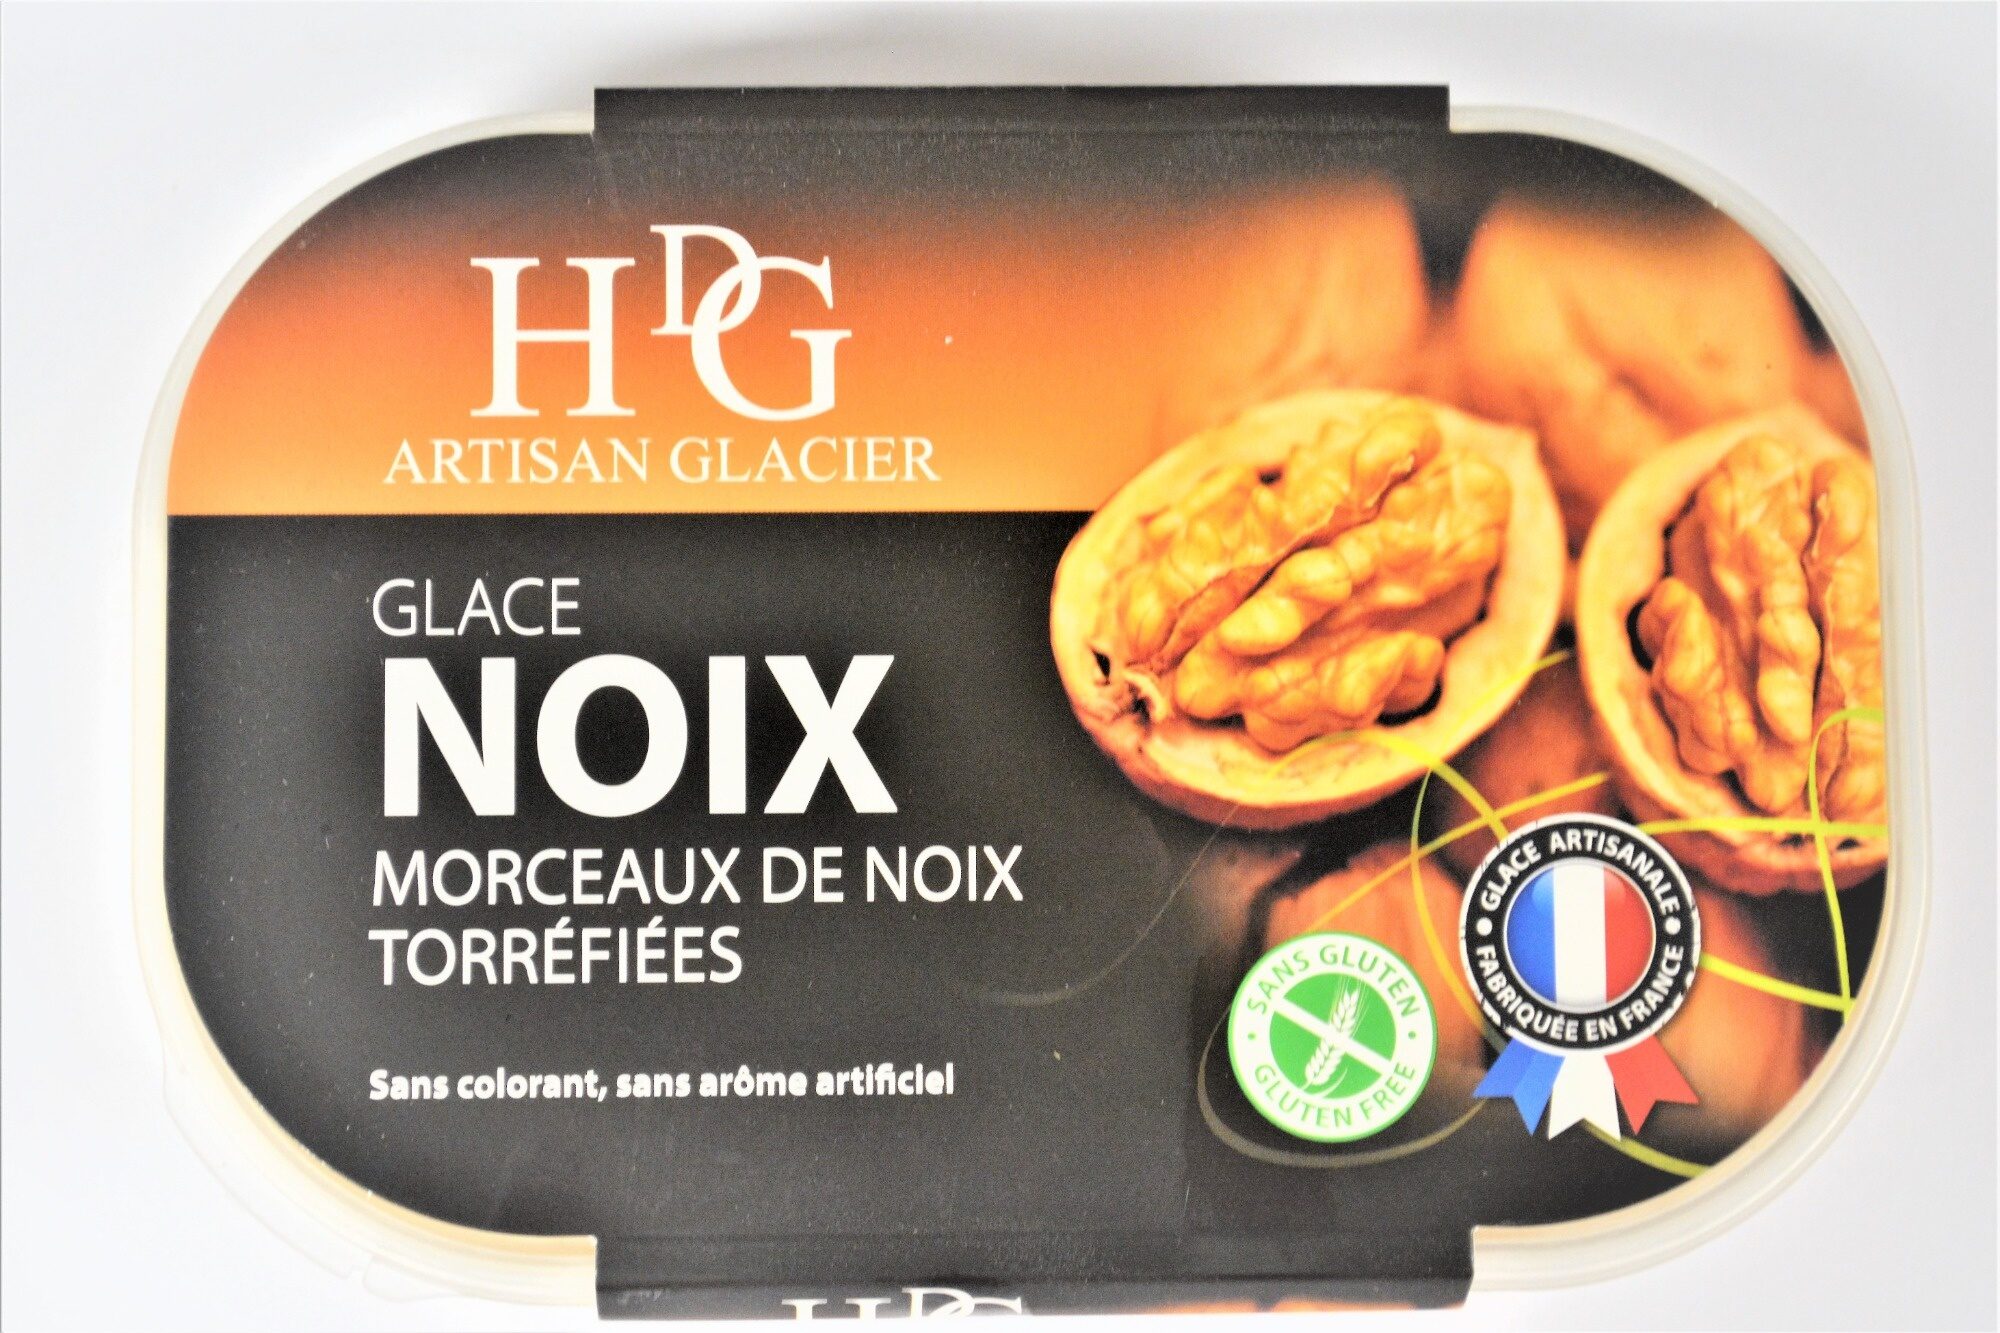 Glace NOIX & morceaux de noix torréfiées - Product - fr